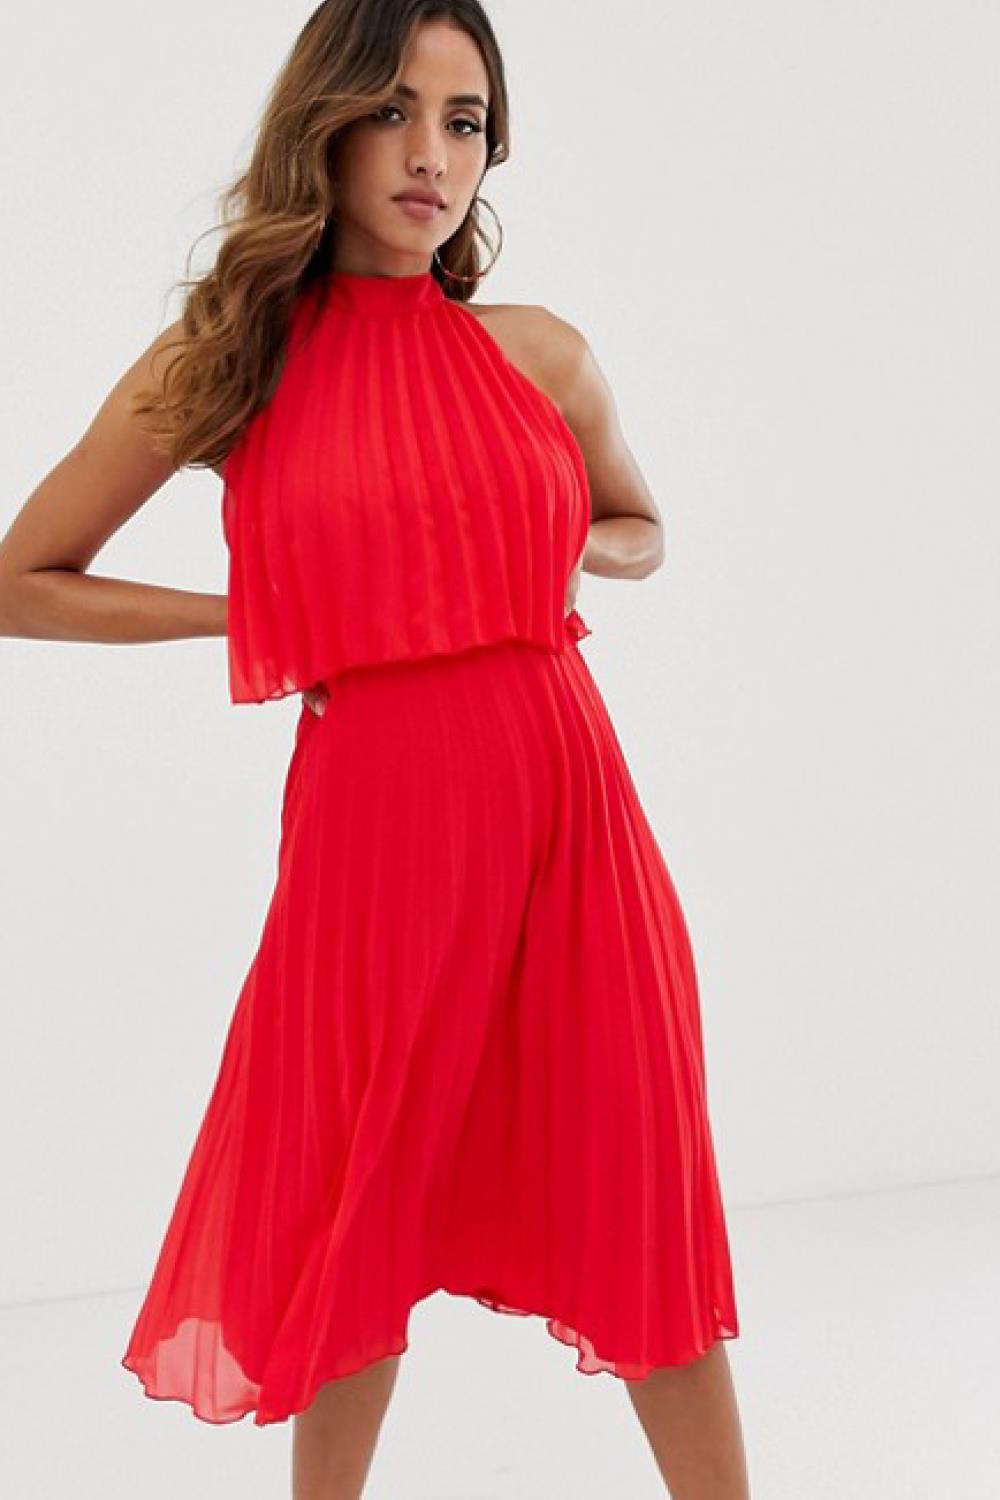 vestido rojo reina letizia mallorca asos 48,99€